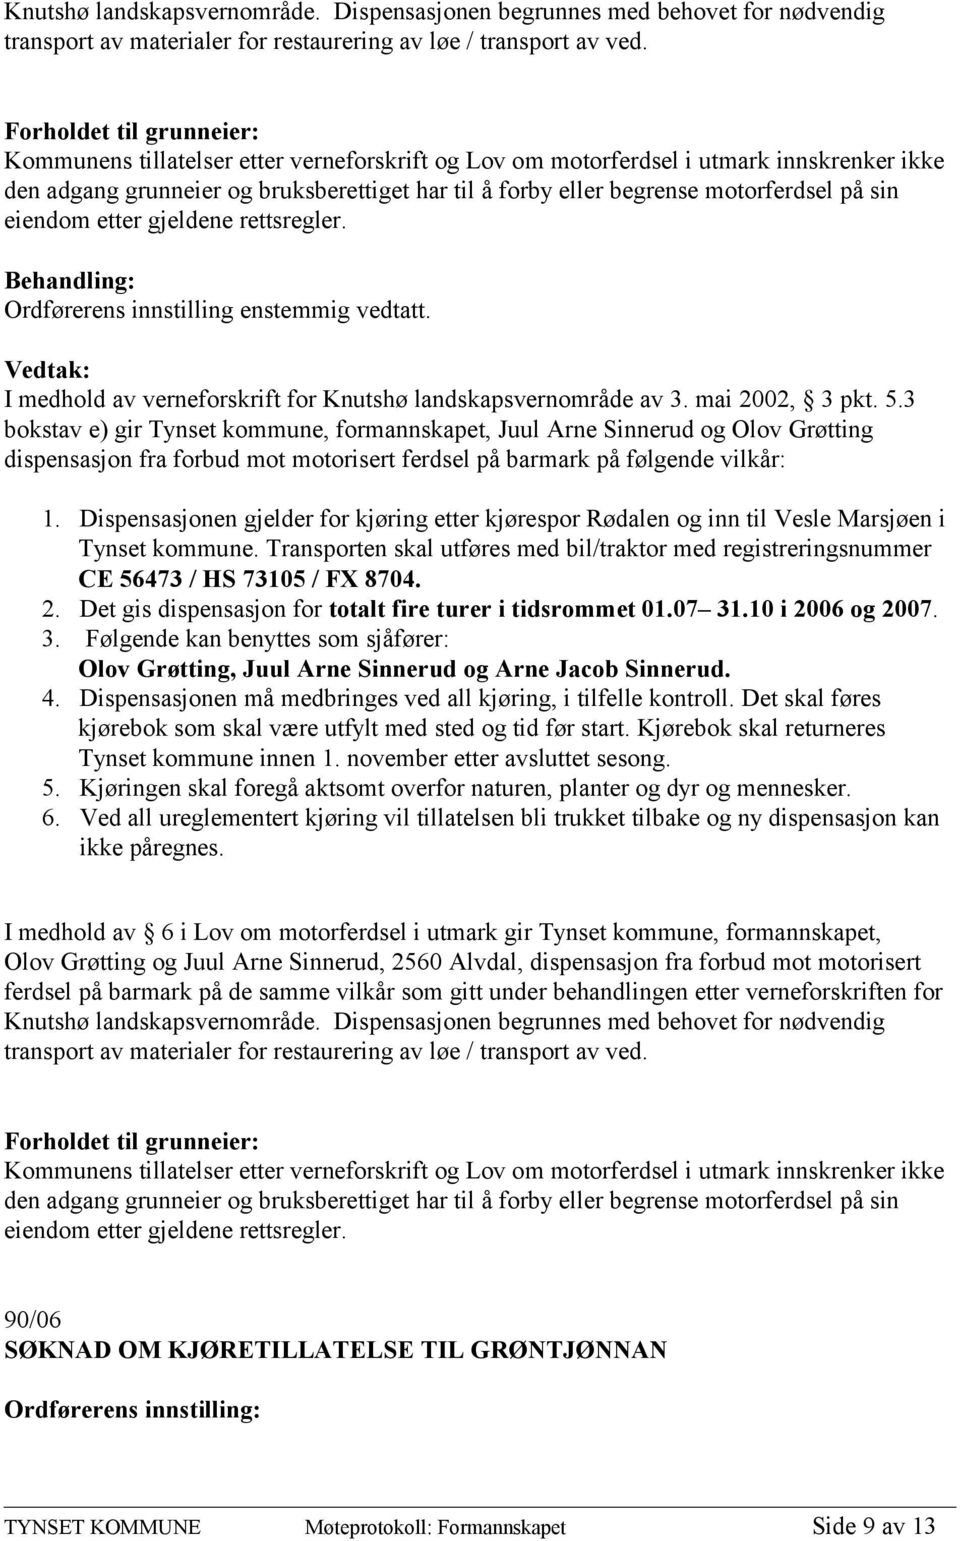 motorferdsel på sin eiendom etter gjeldene rettsregler. I medhold av verneforskrift for Knutshø landskapsvernområde av 3. mai 2002, 3 pkt. 5.